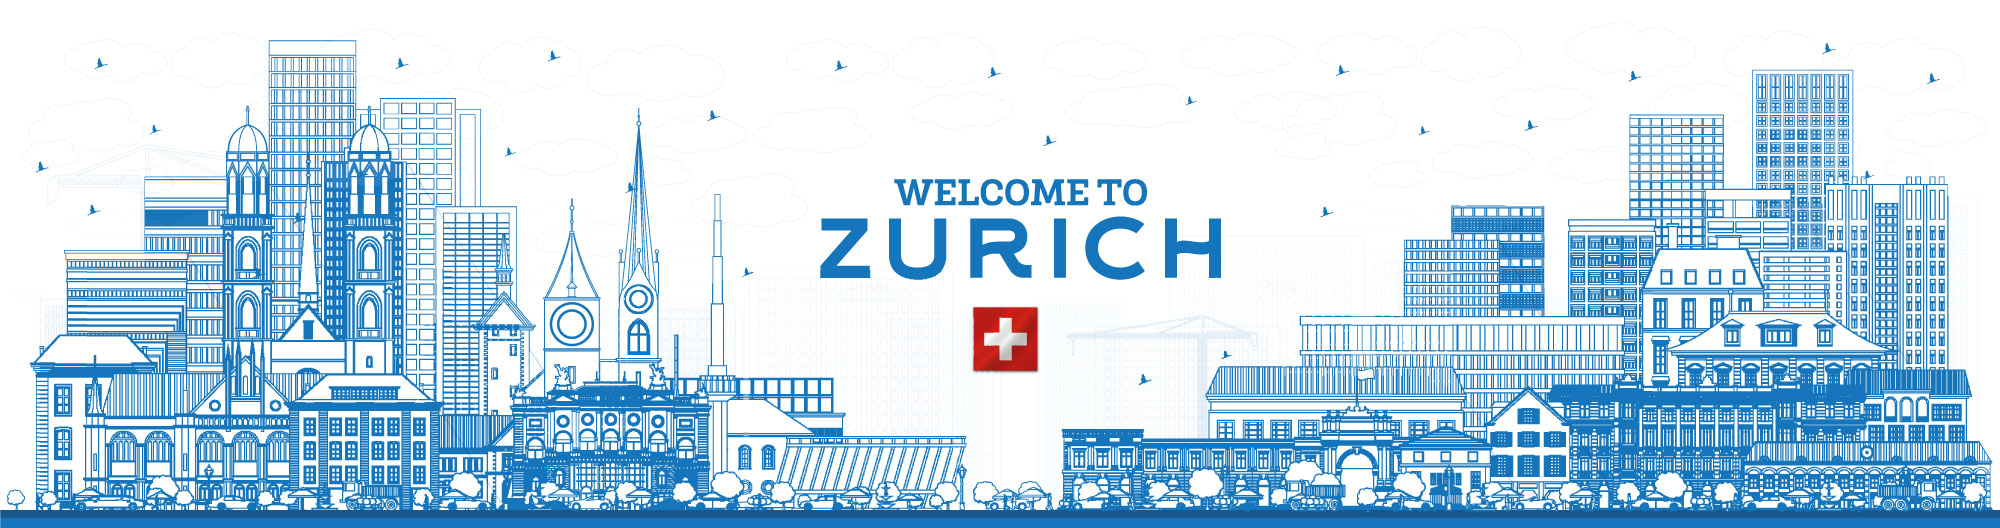 Welcome to Zurich!